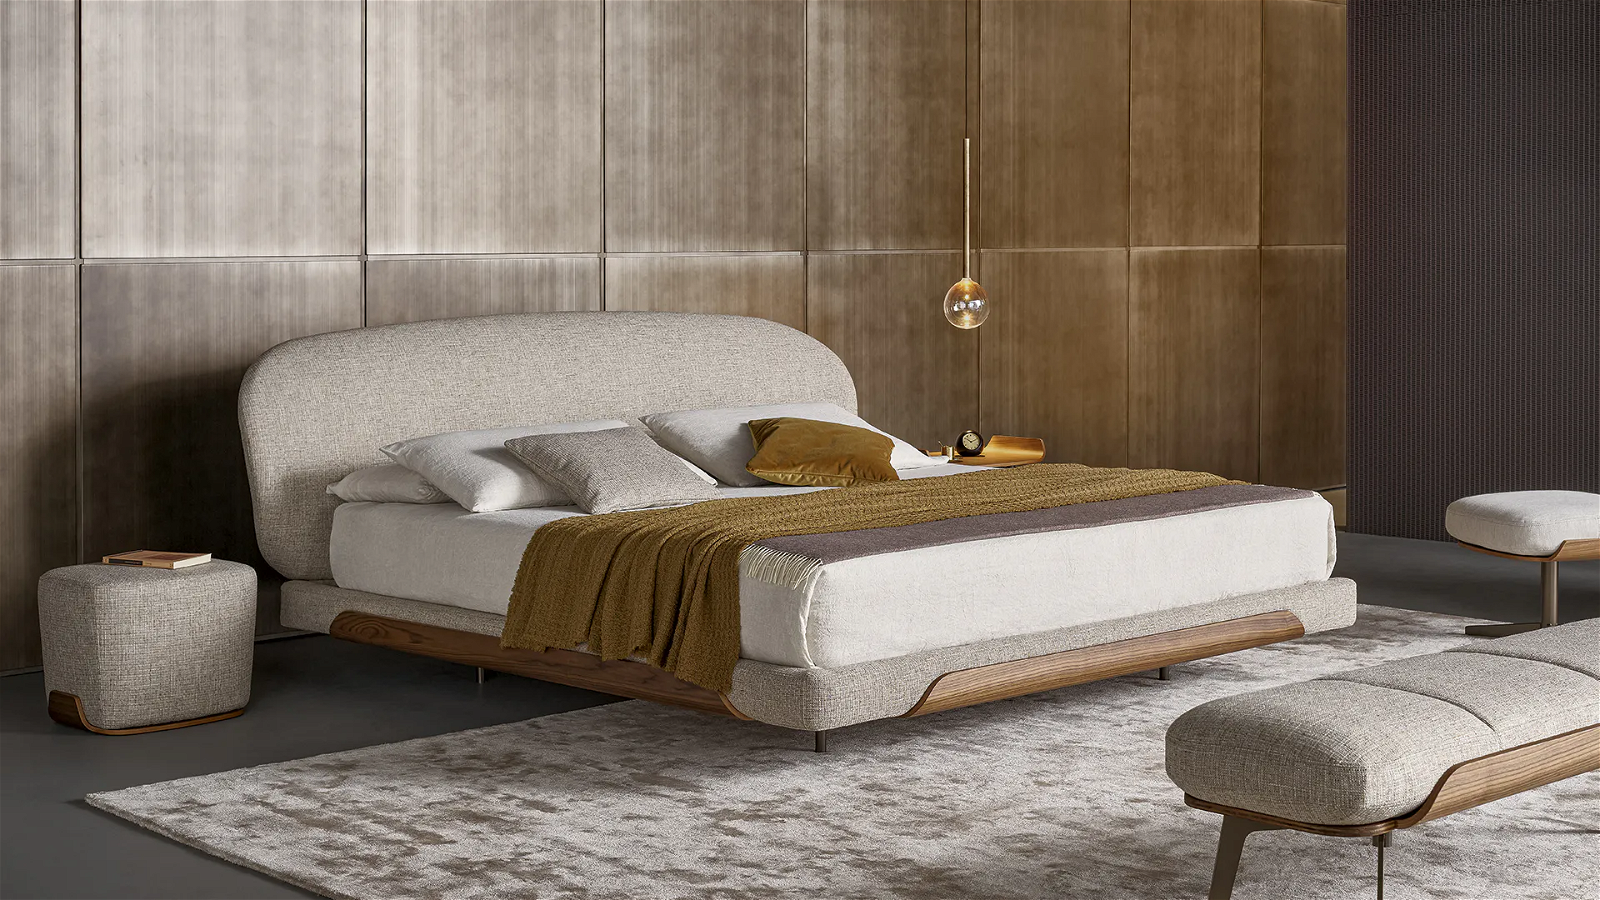 Puf de dormitorio - Taburete tapizado de madera maciza - Muebles clásicos